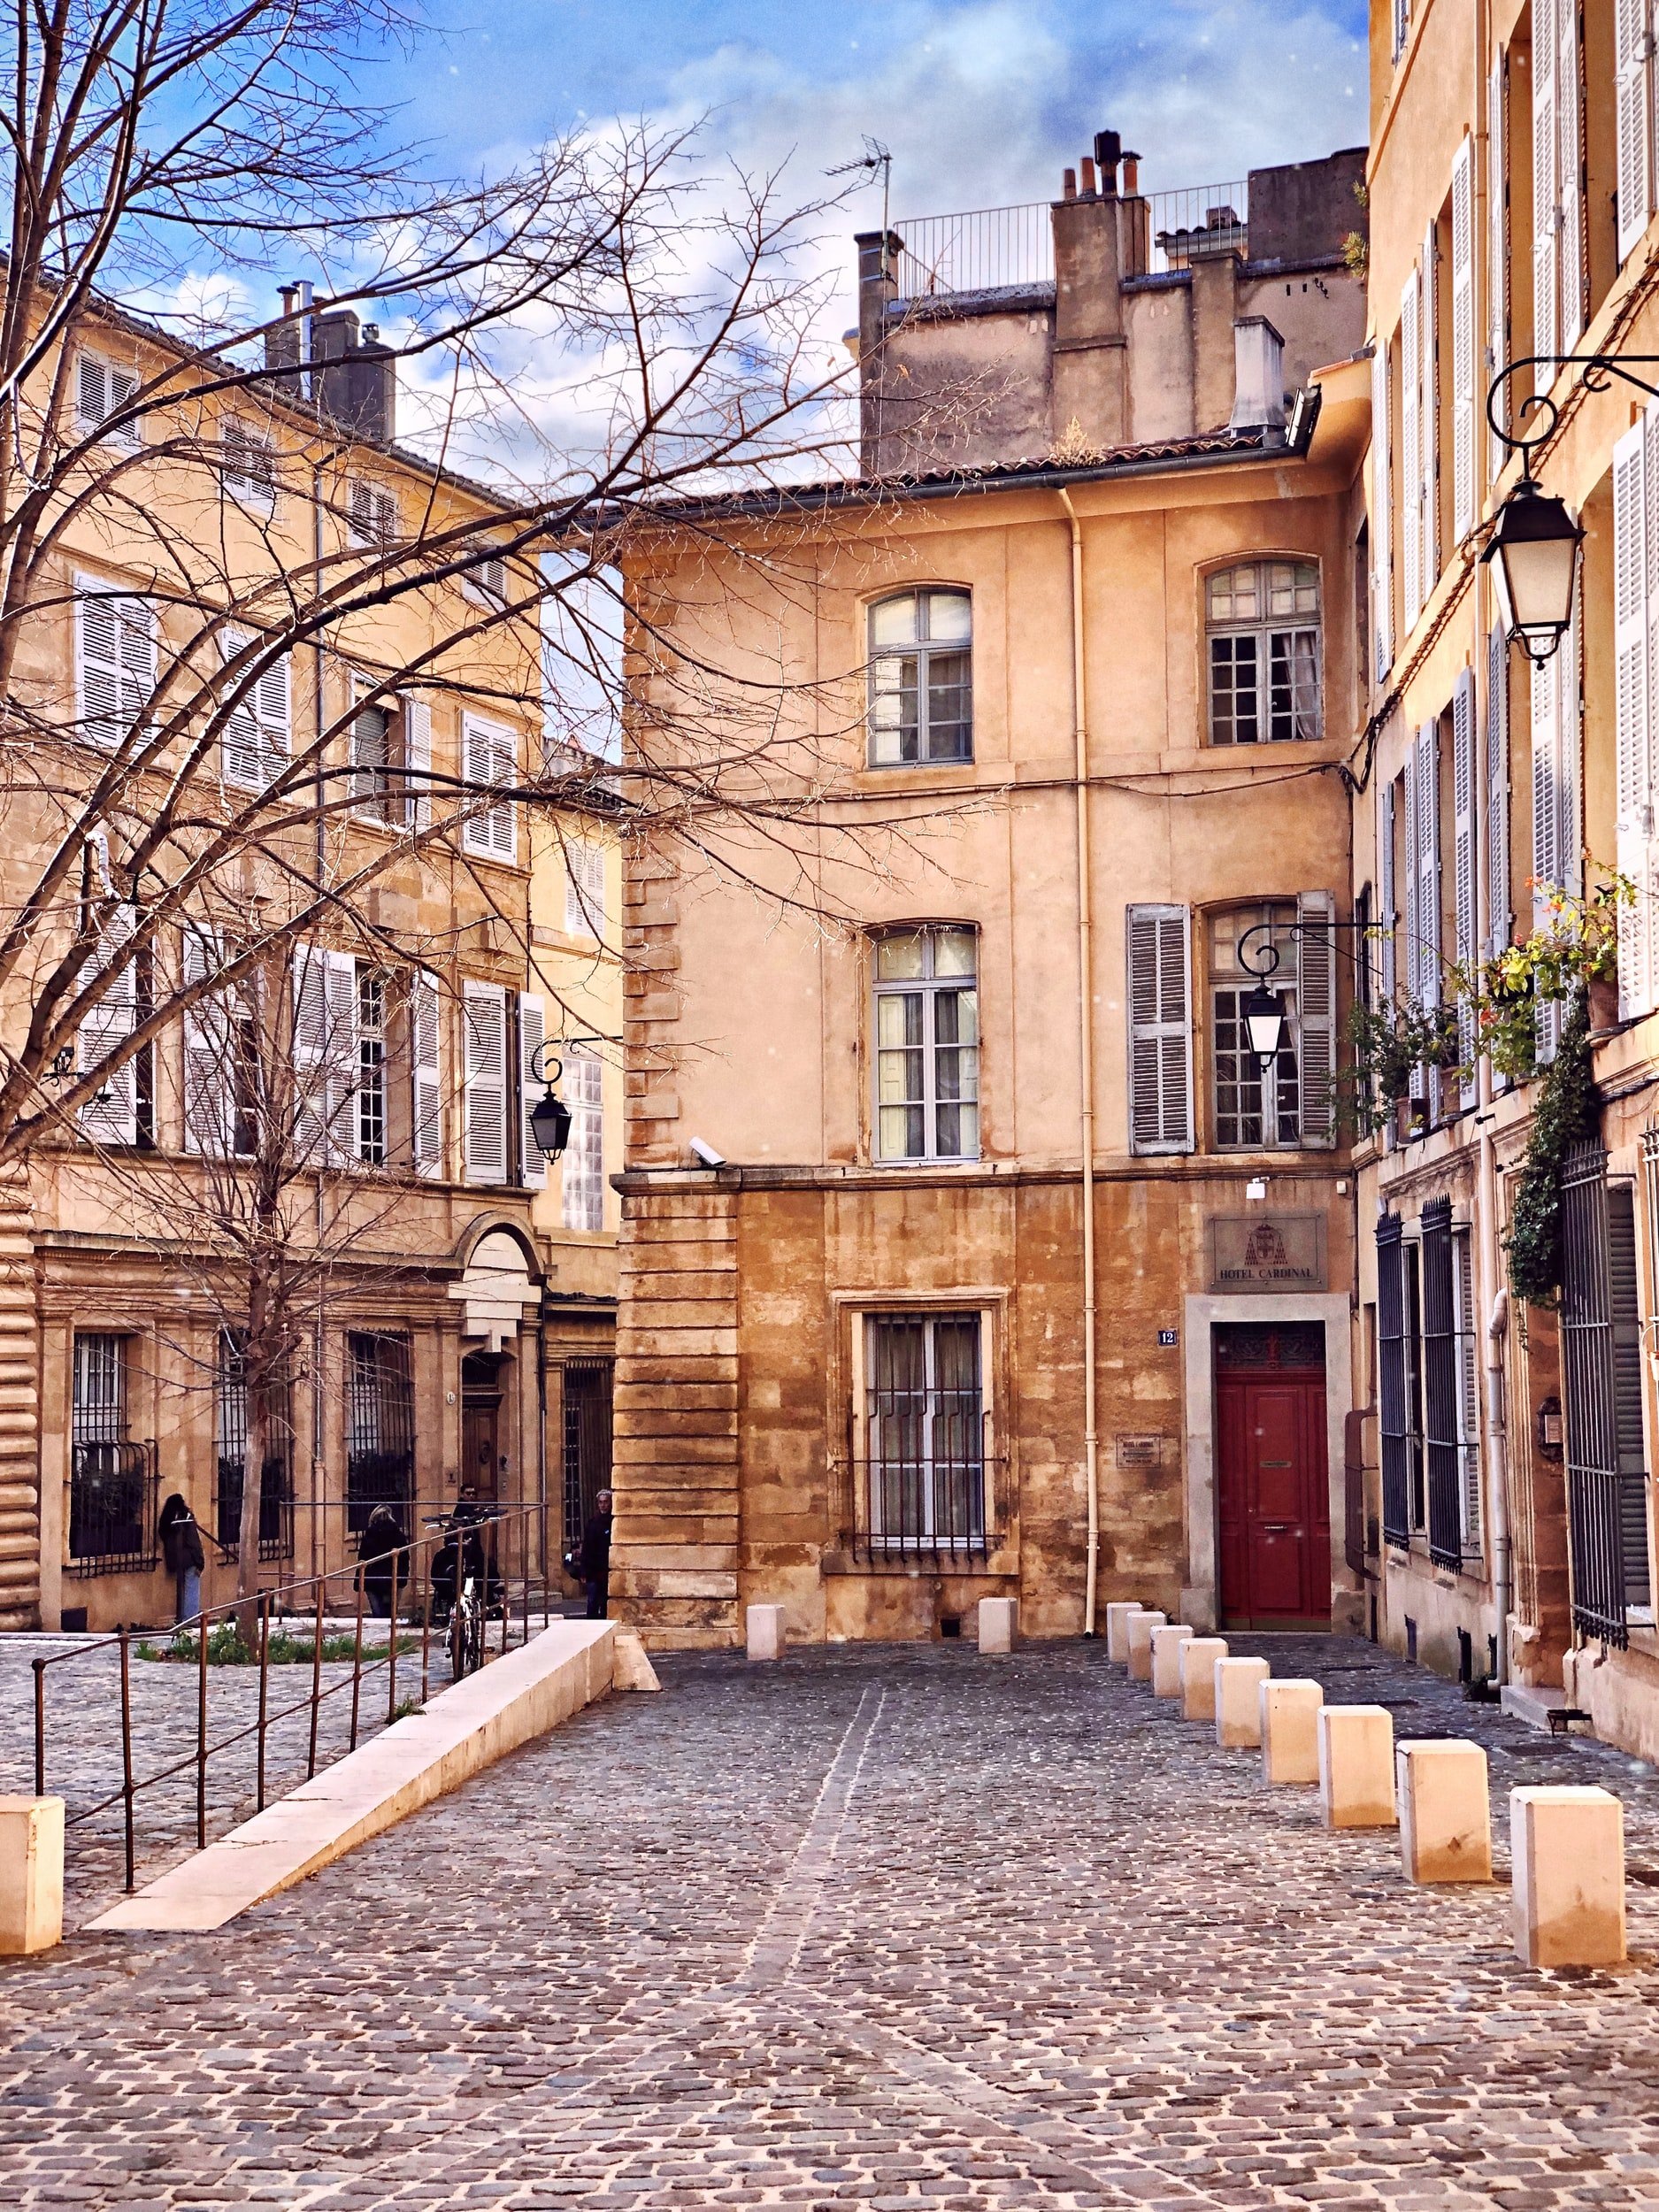 City of Aix en Provence